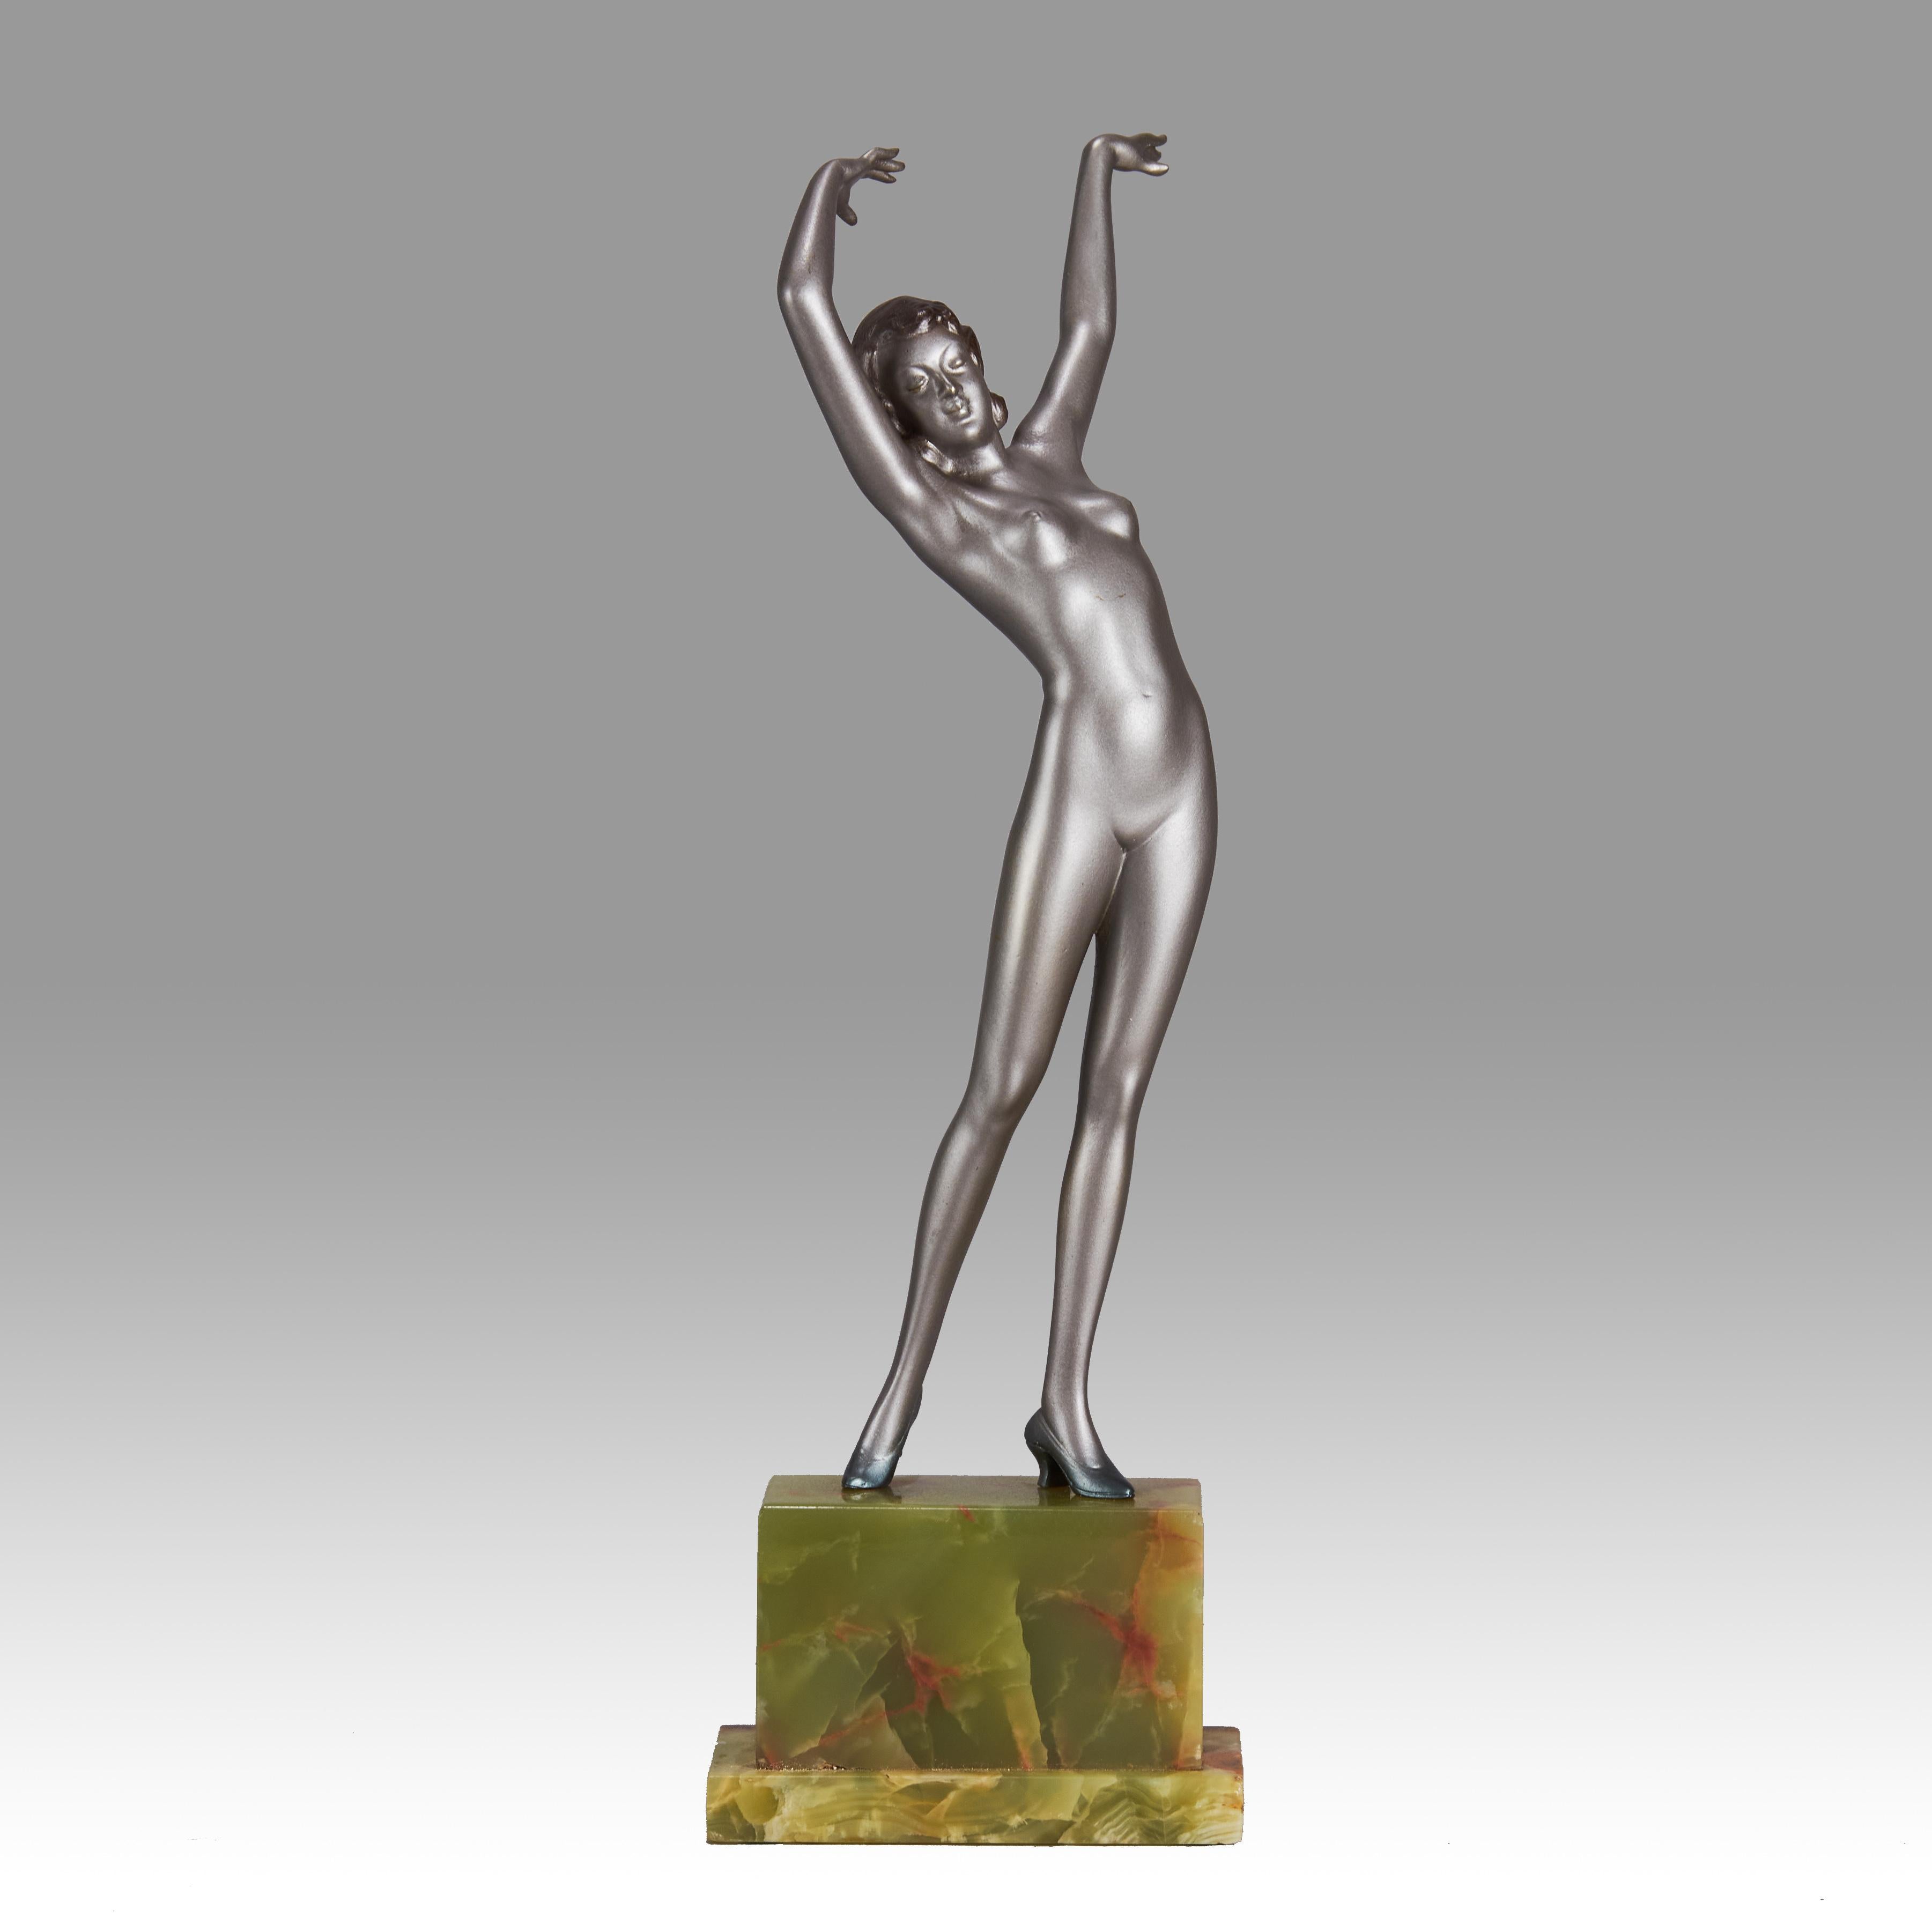 

Remarquable bronze Art déco autrichien du début du 20e siècle, peint à froid en argent et en émail, représentant une jeune femme en position étirée, les bras au-dessus de la tête, portant seulement une paire de talons hauts. La surface du bronze